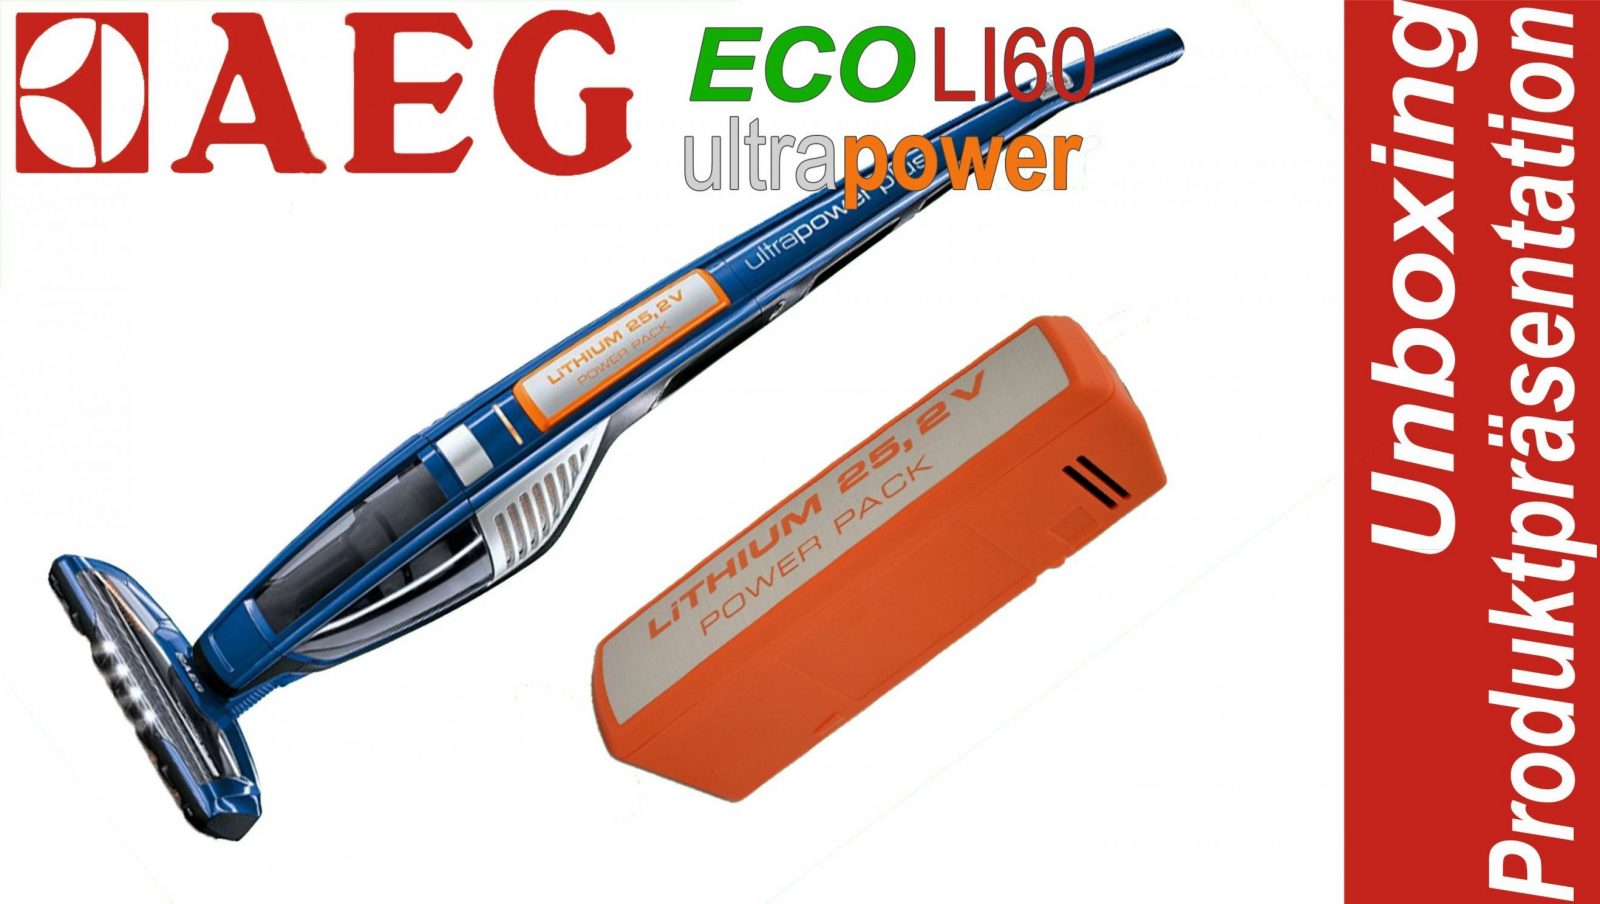 Aeg Eco Li60 Ultra Power Akkustaubsauger  Unboxing Und von Aeg Ultrapower Ag 5022 Bild